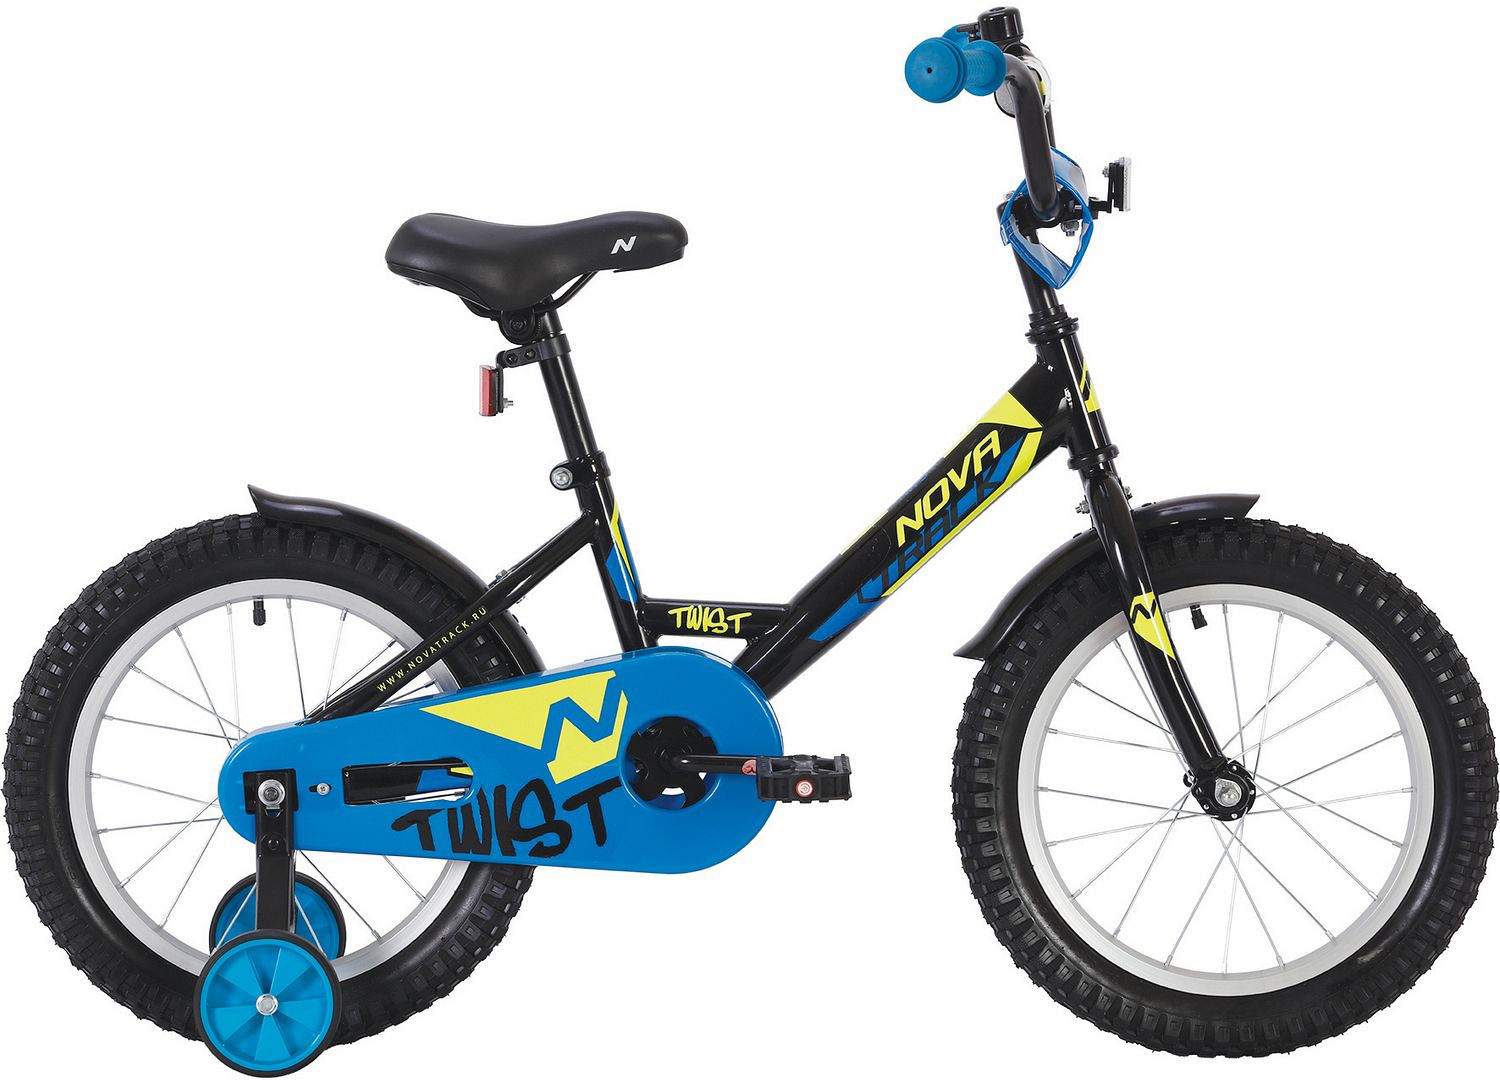  Отзывы о Детском велосипеде Novatrack Twist 18 2020